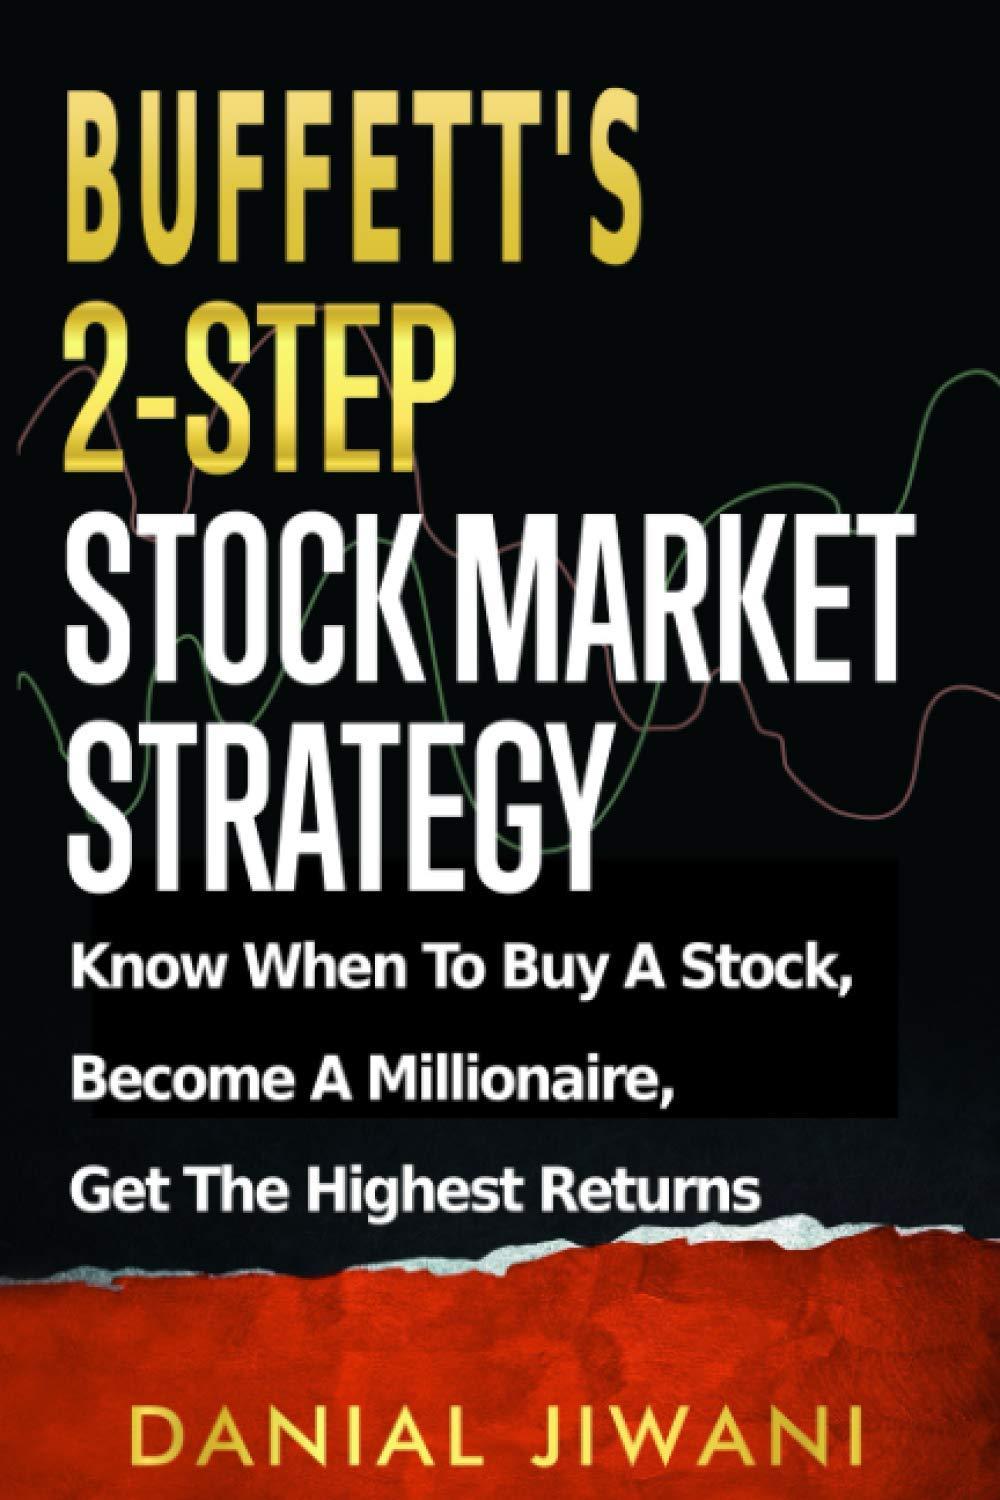 buffetts 2 step stock market strategy 1st edition danial jiwani 8677554032, 979-8677554032